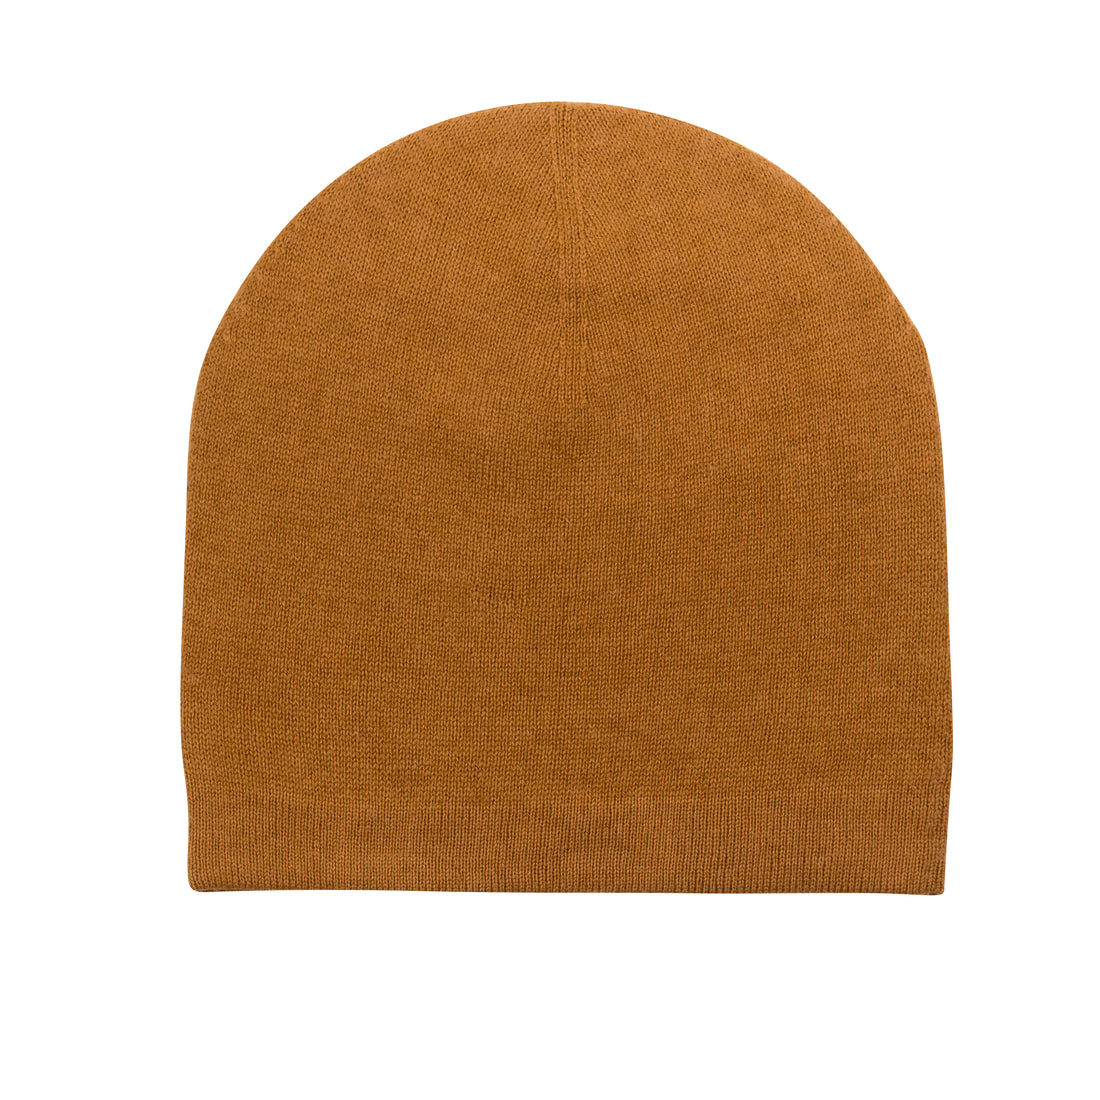 Bonnet bonnet cachemire lisse marron